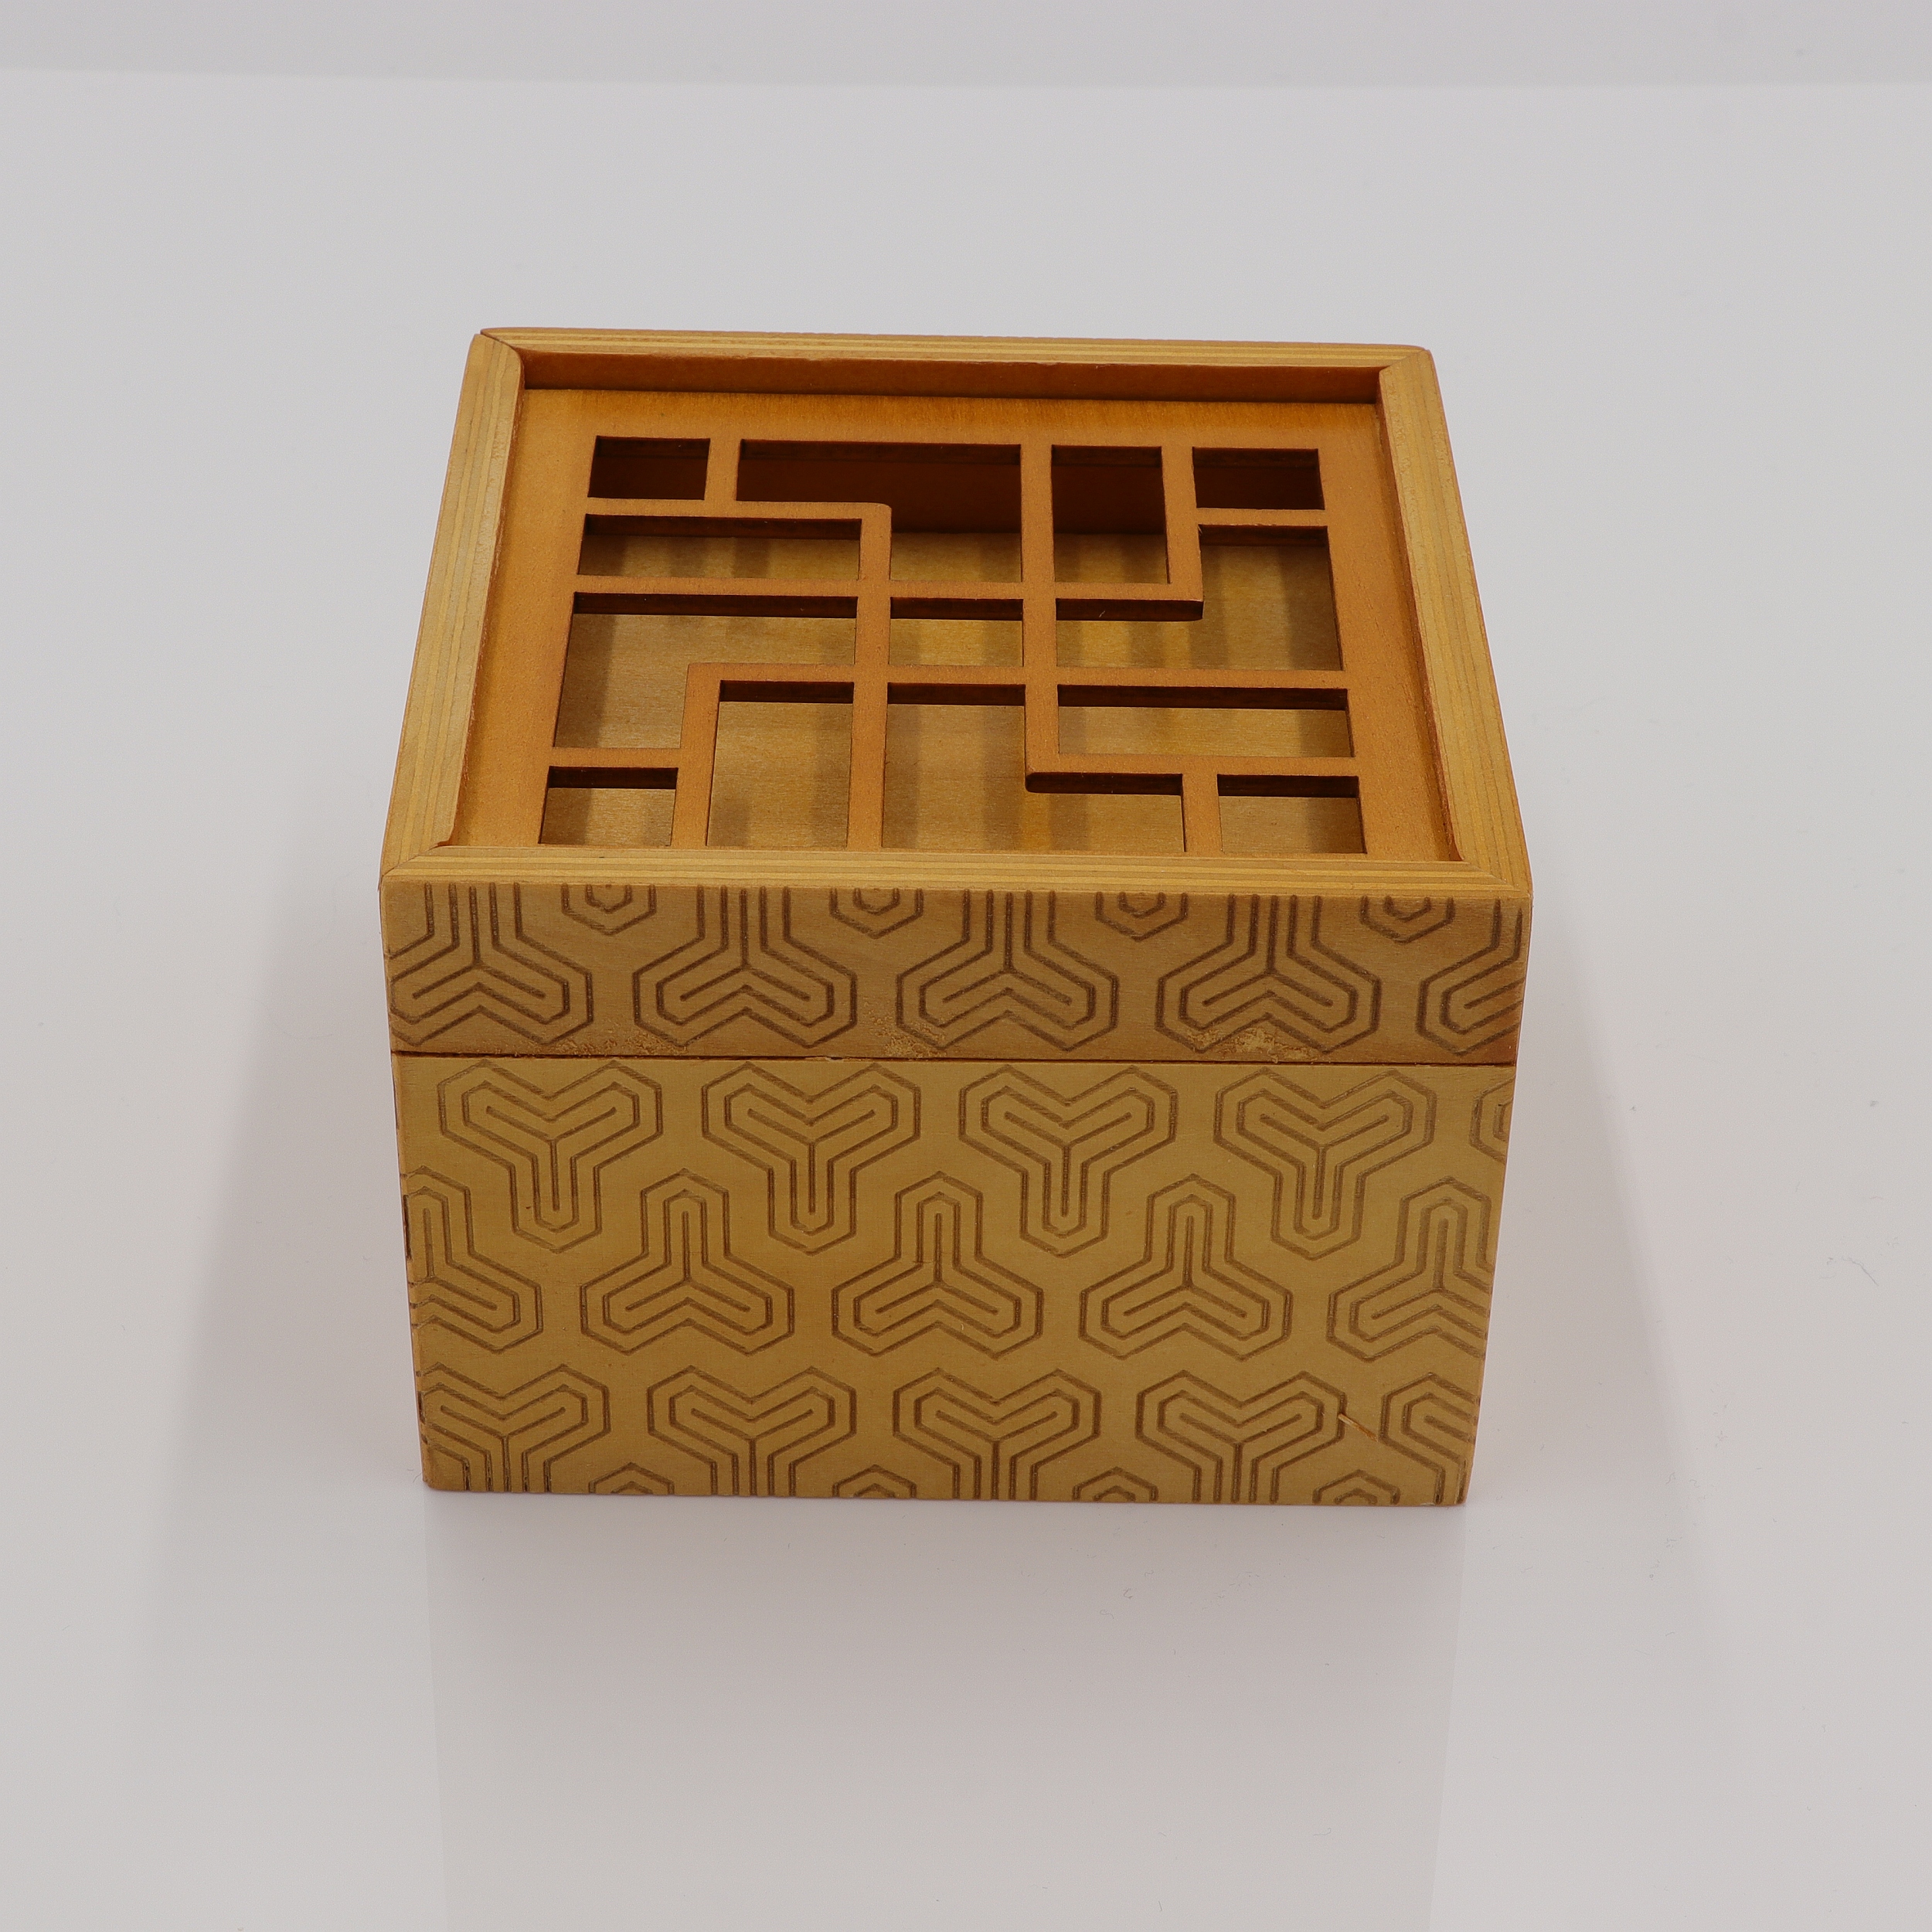 Treasure - Trick-Kiste aus Holz - Puzzle Box - Secret Opening Problem